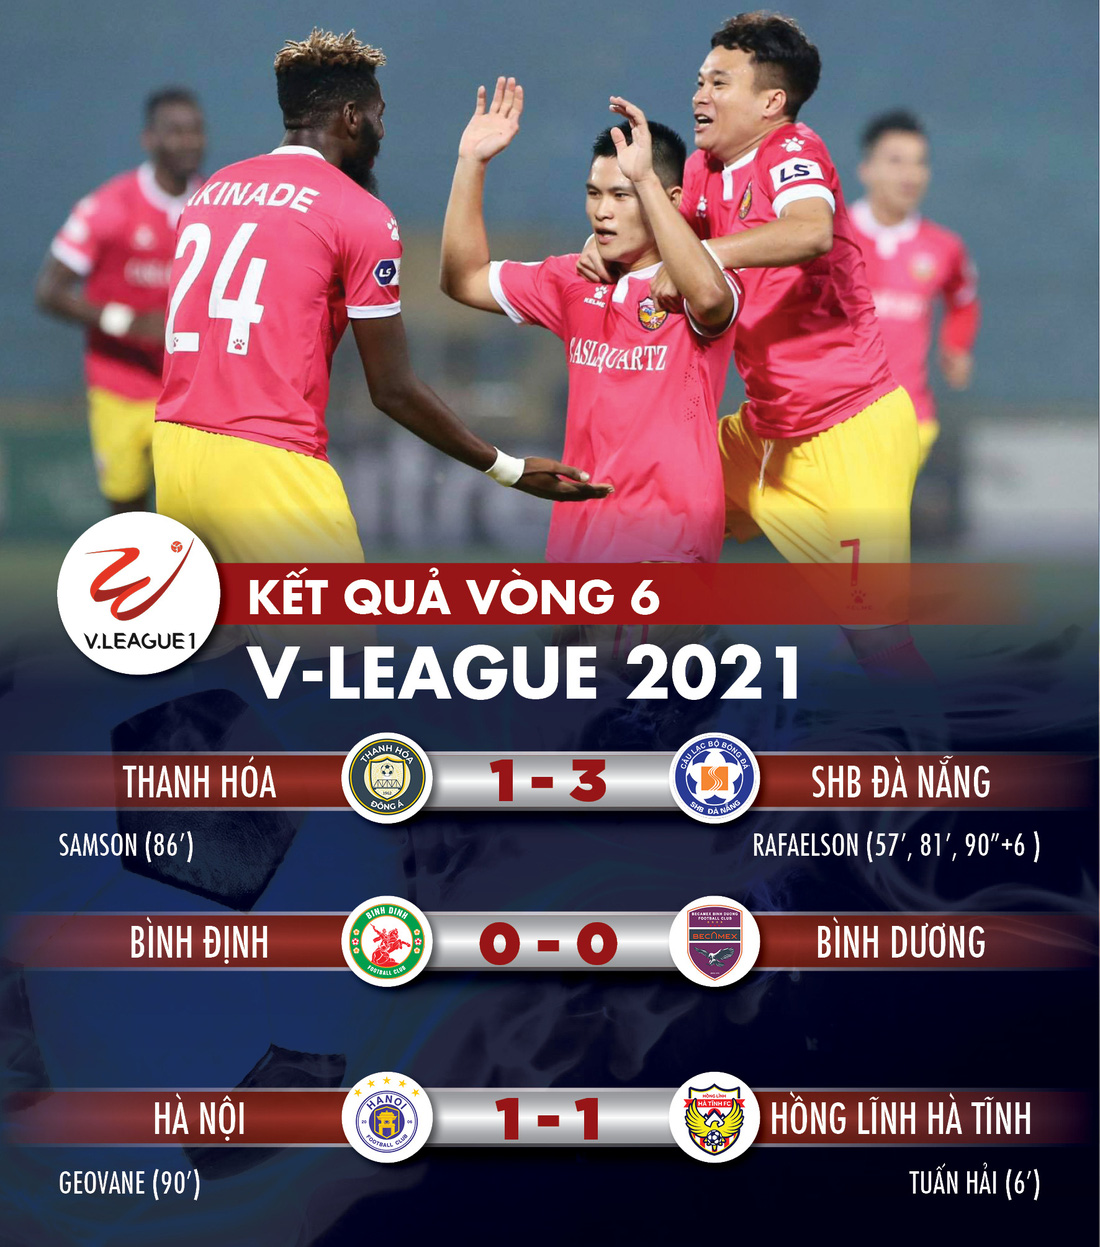 Kết quả V-League 2021: CLB Hà Nội rớt khỏi top 3 - Ảnh 1.